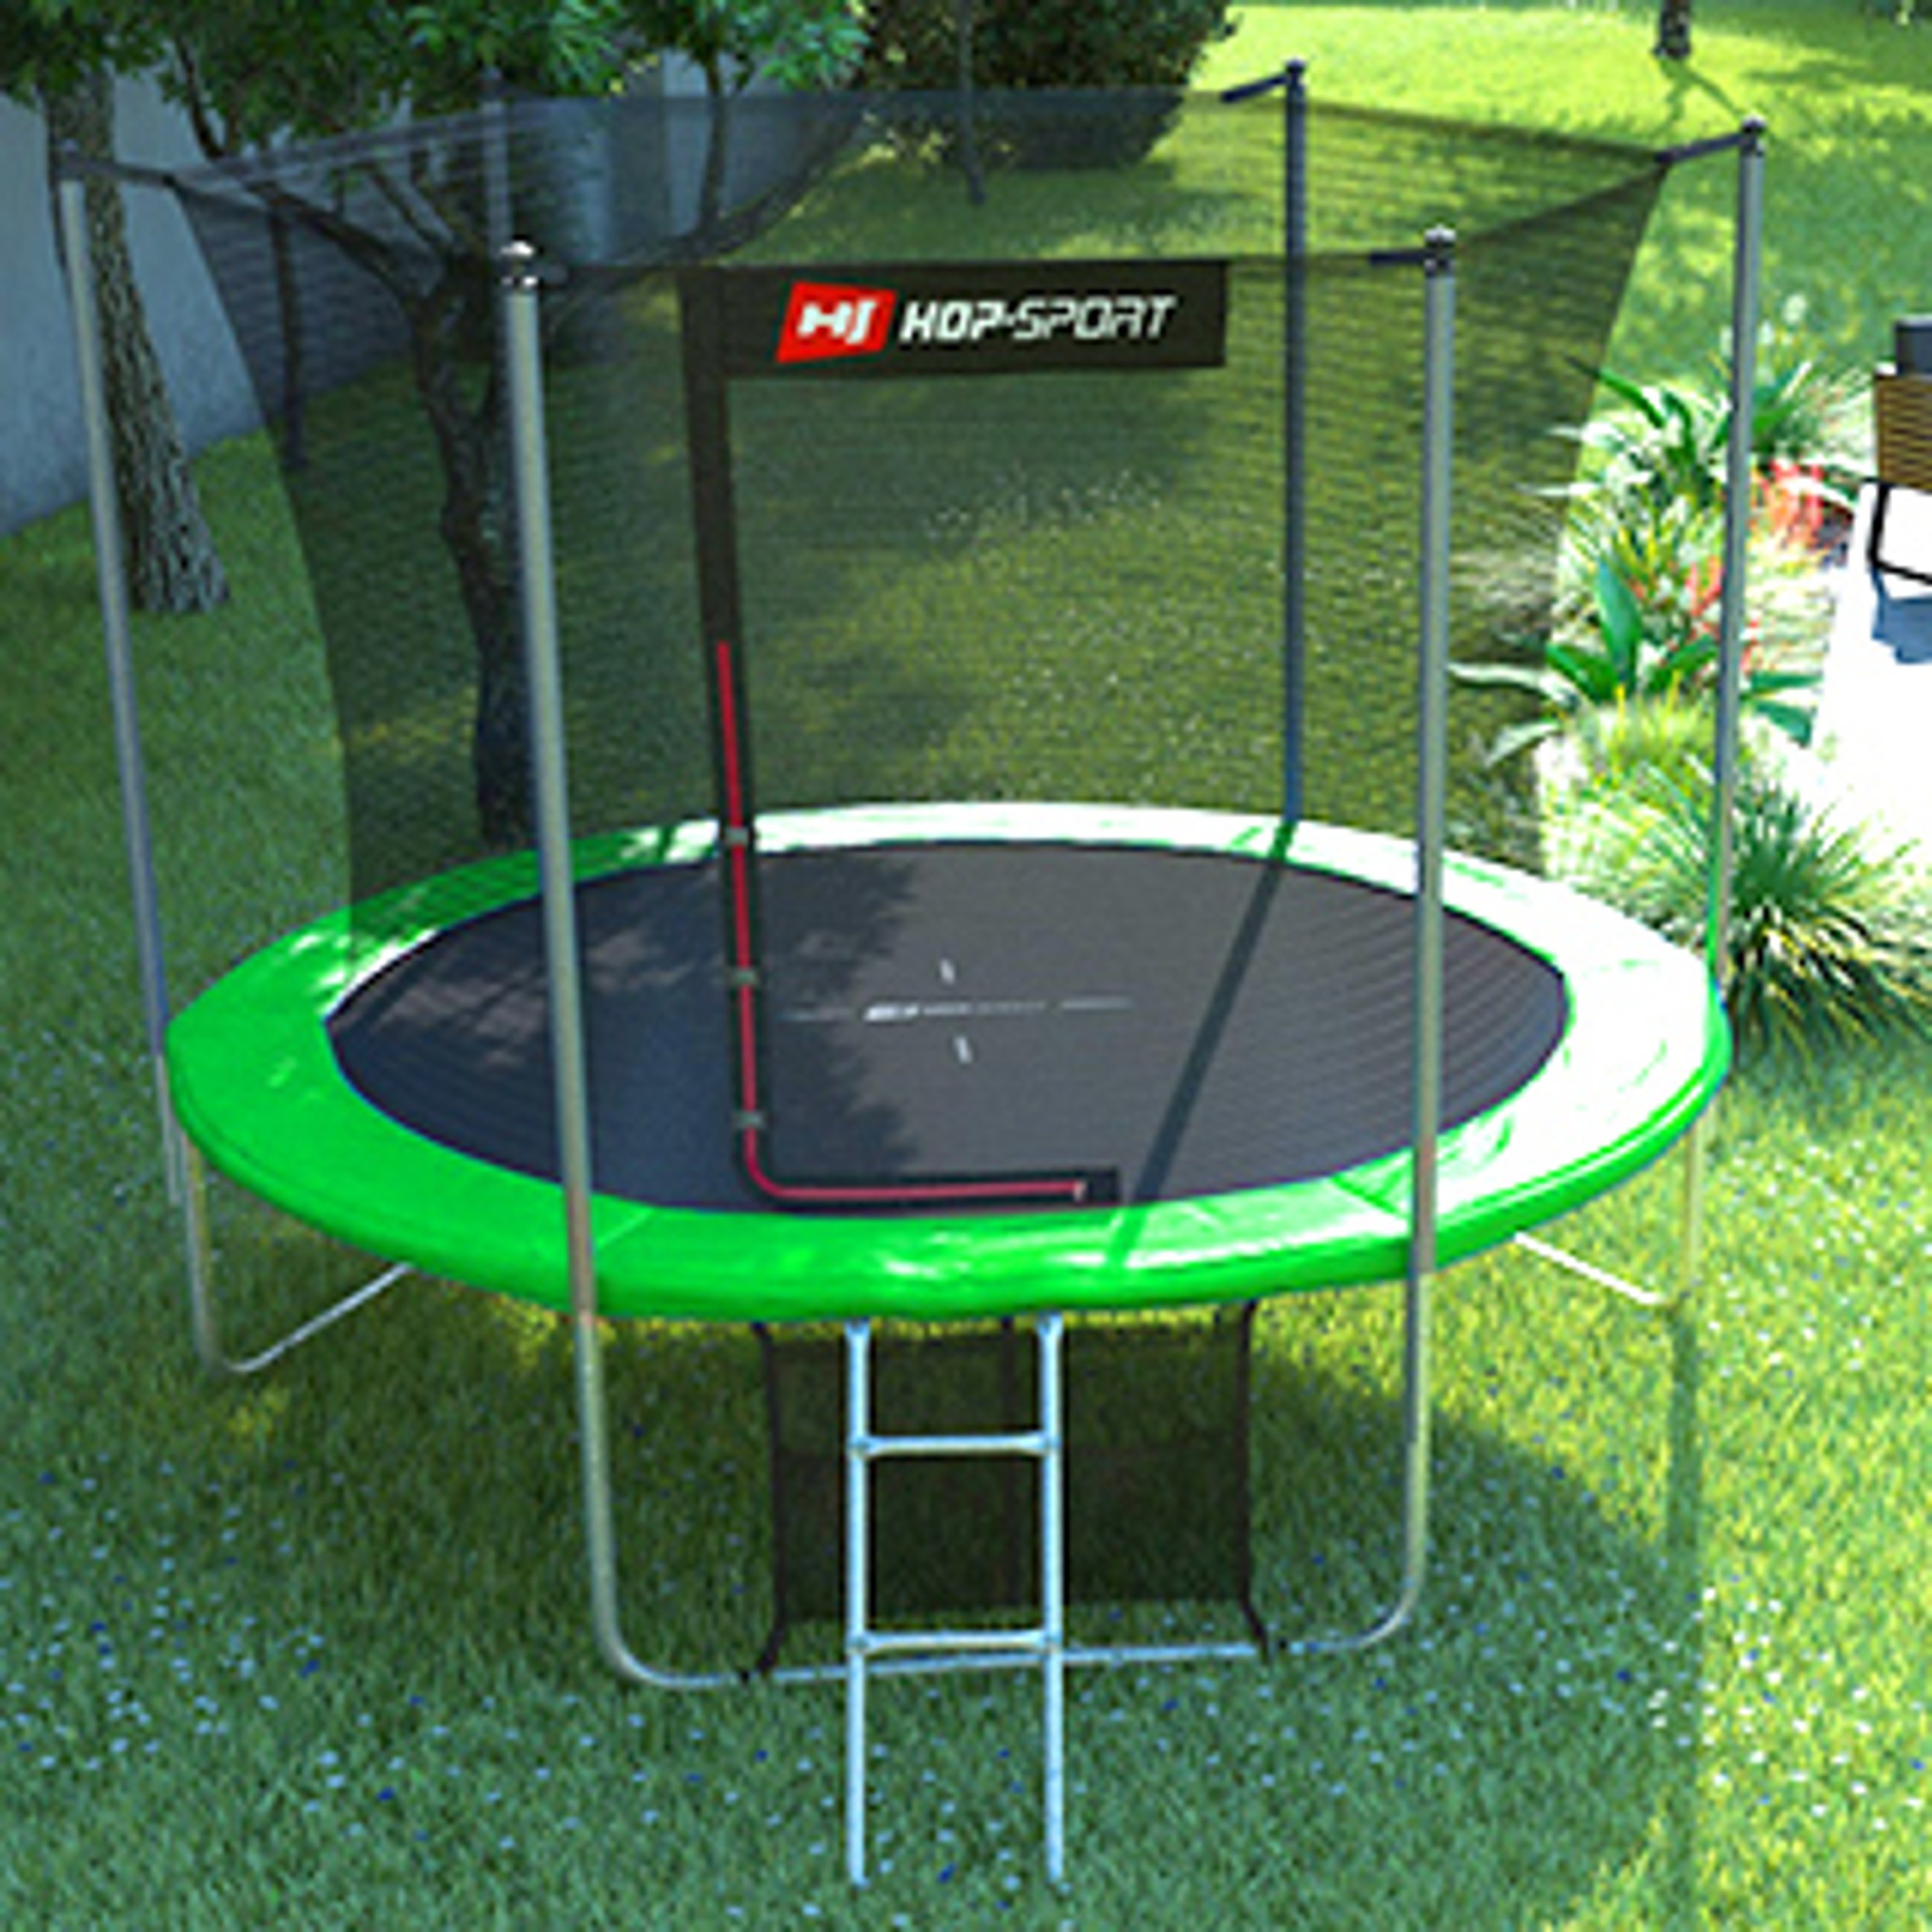 trampolina ogrodowa Hop-Sport w scenerii ogrodowej